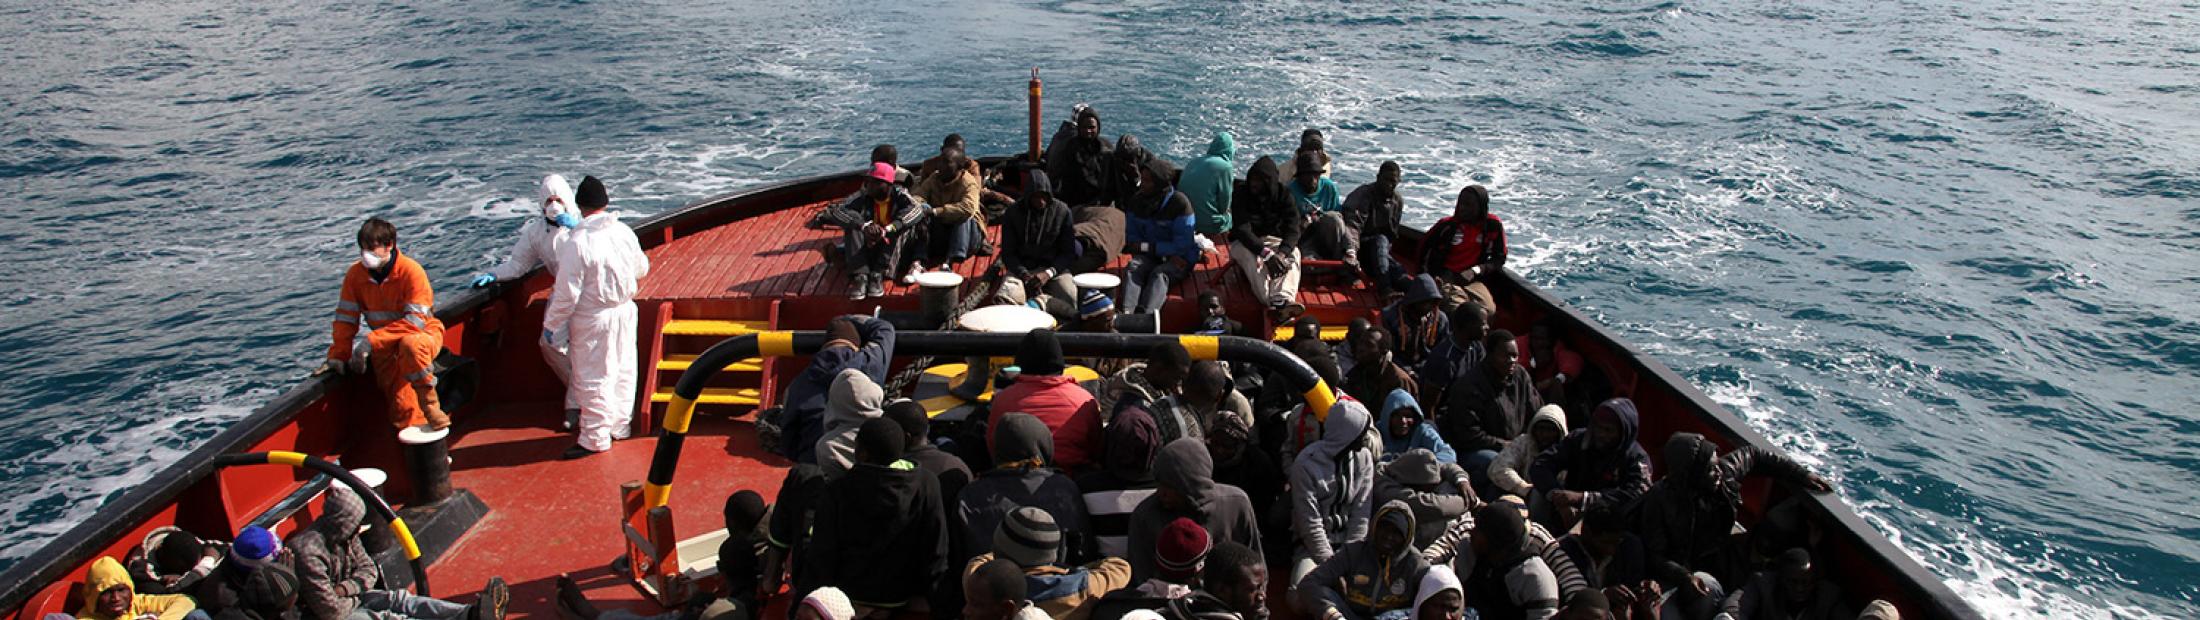 Más de 500 personas podrían haber perdido la vida cruzando el Mediterráneo